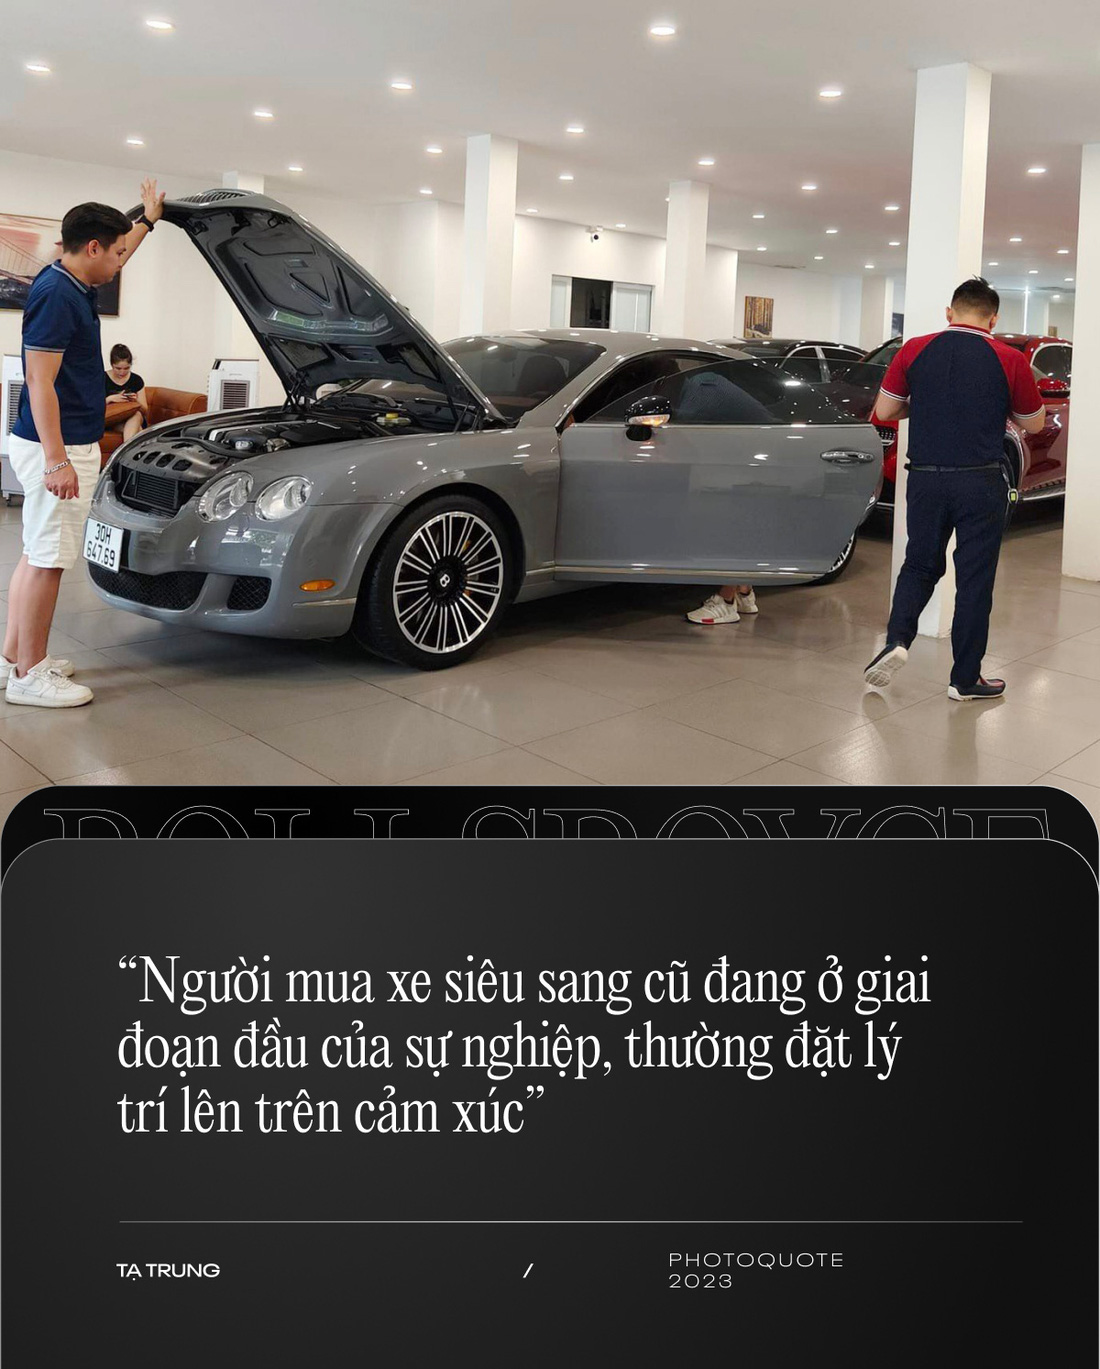 Bán Rolls-Royce cũ cho khách Việt: Nhiều người đổi bằng bất động sản, đồng hồ, kim cương- Ảnh 6.